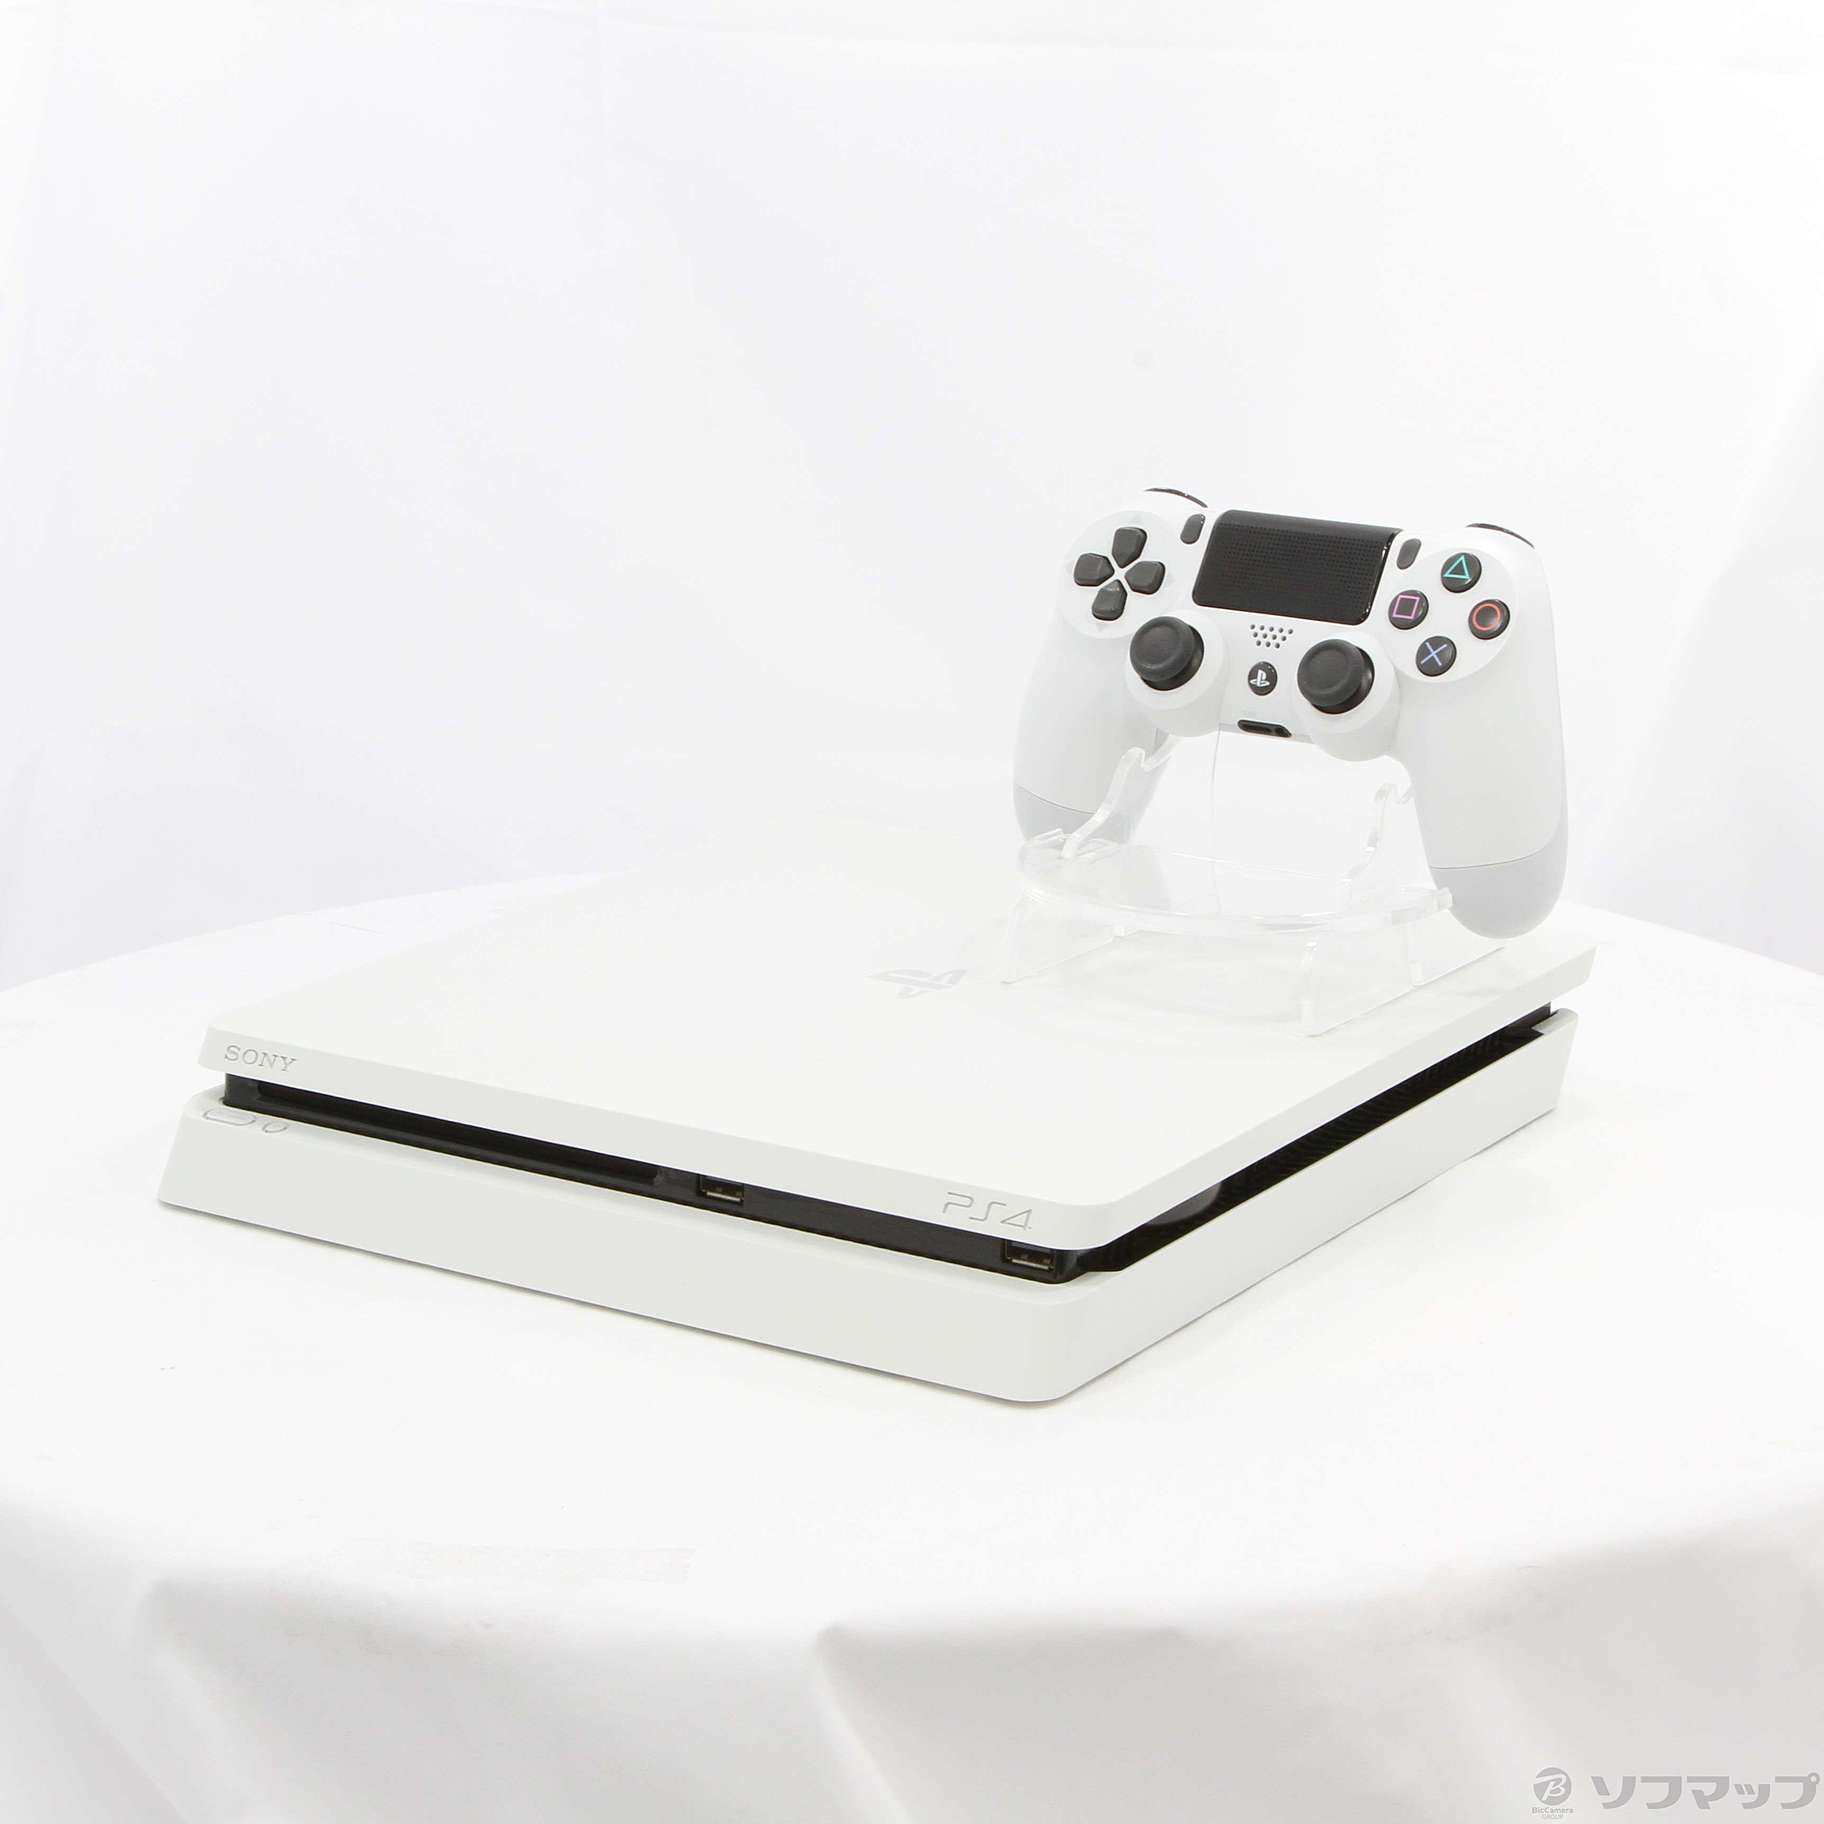 中古】PlayStation 4 グレイシャー・ホワイト 1TB CUH-2200BB02 